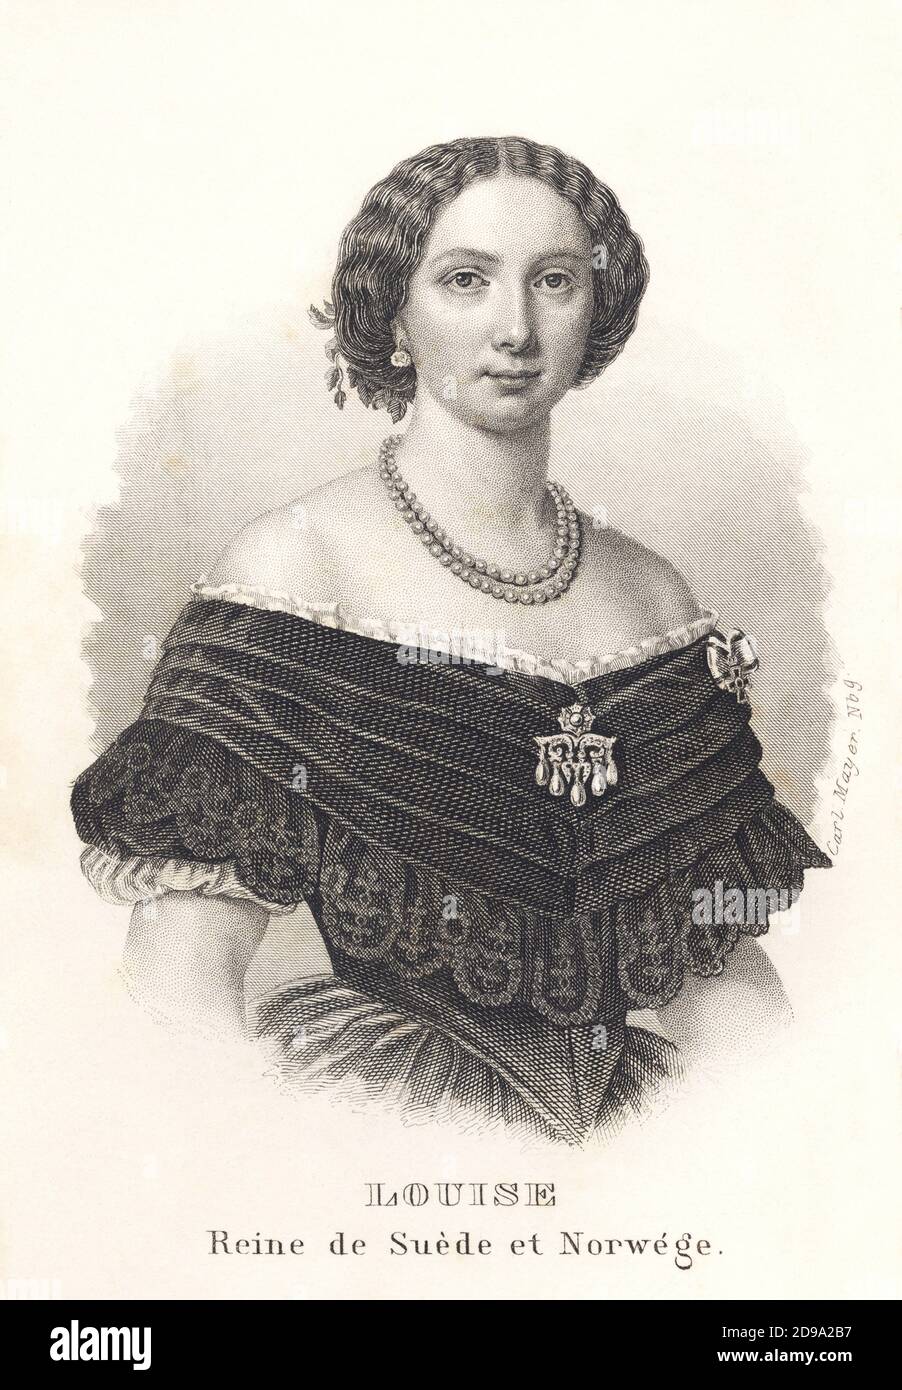 1861: Königin von Schweden und Norwegen LOUISE (Louise von den Niederlanden, 1828 - 1871), Ehefrau von König Karl XV von Schweden und IV von Norwegen. Porträt von ALMANACH DE GOTHA , 1861. Ihr Vater war Prinz Frederik von den Niederlanden, das zweite Kind von König Willem I. von den Niederlanden und Wilhelmina von Preußen. Ihre Mutter war Prinzessin Louise von den Niederlanden (geb.Prinzessin Louise von Preußen), das achte Kind von König Friederich Wilhelm III von Preußen und Luise von Mecklenburg-Strelitz. Prinzessin Louise heiratete am 19. Juni 1850 Kronprinz Carl von Schweden und Norwegen, den Sohn des Königs Stockfoto